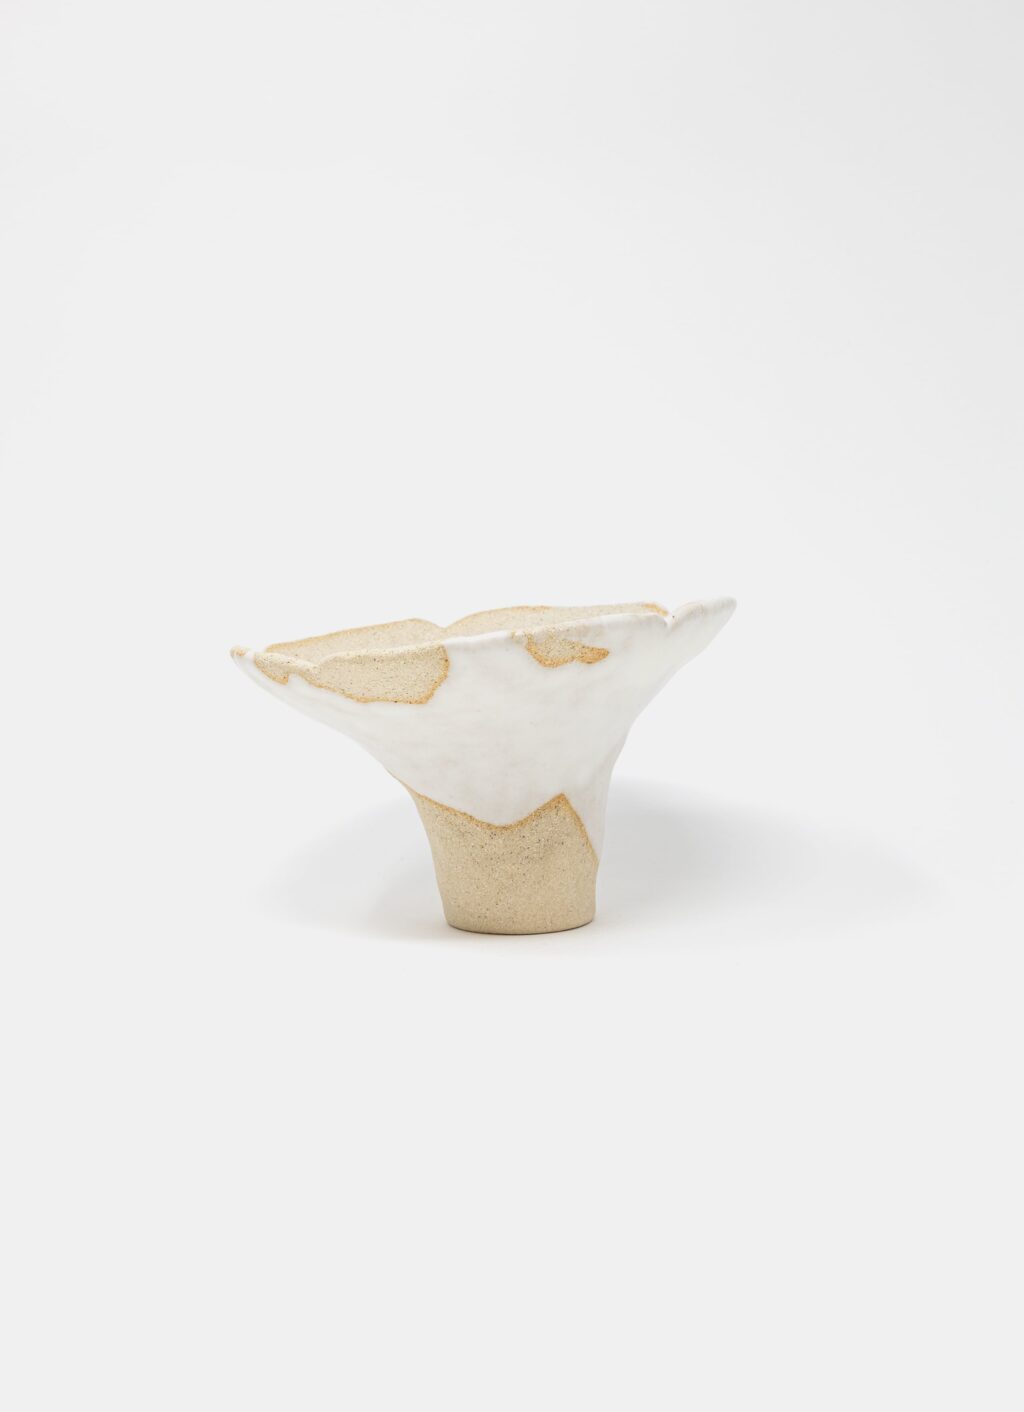 Mano Mani - Ikebana Vase - Light Stoneware and white glaze - 1